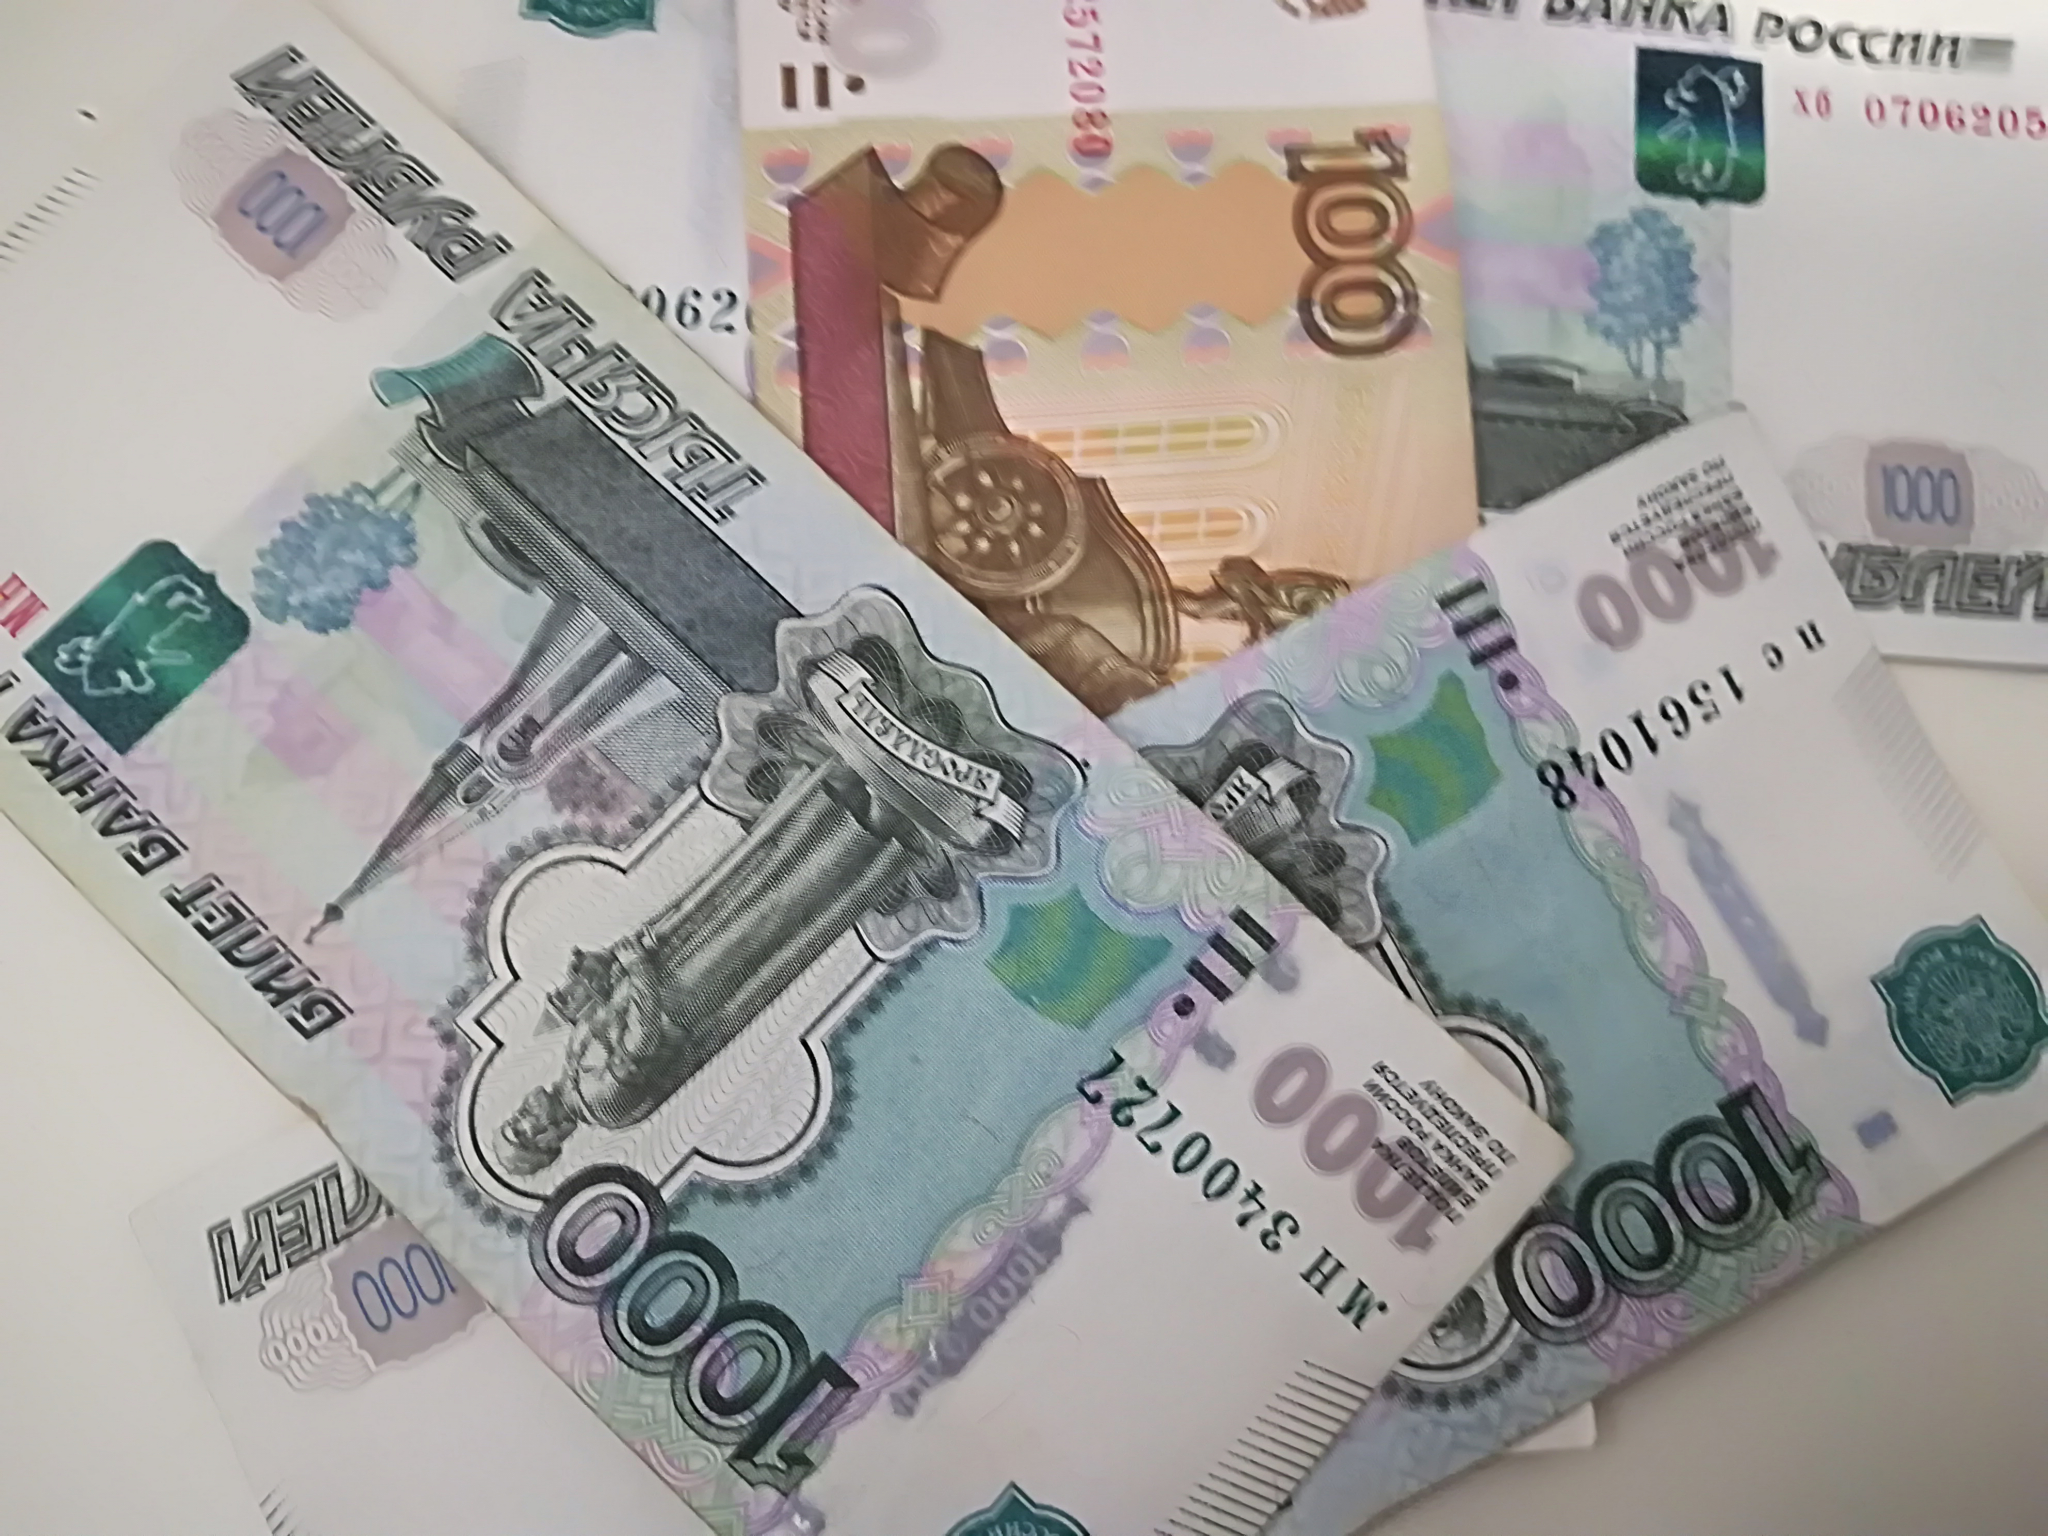 "Ну, теперь заживем": с 1 января МРОТ вырастет на 850 рублей